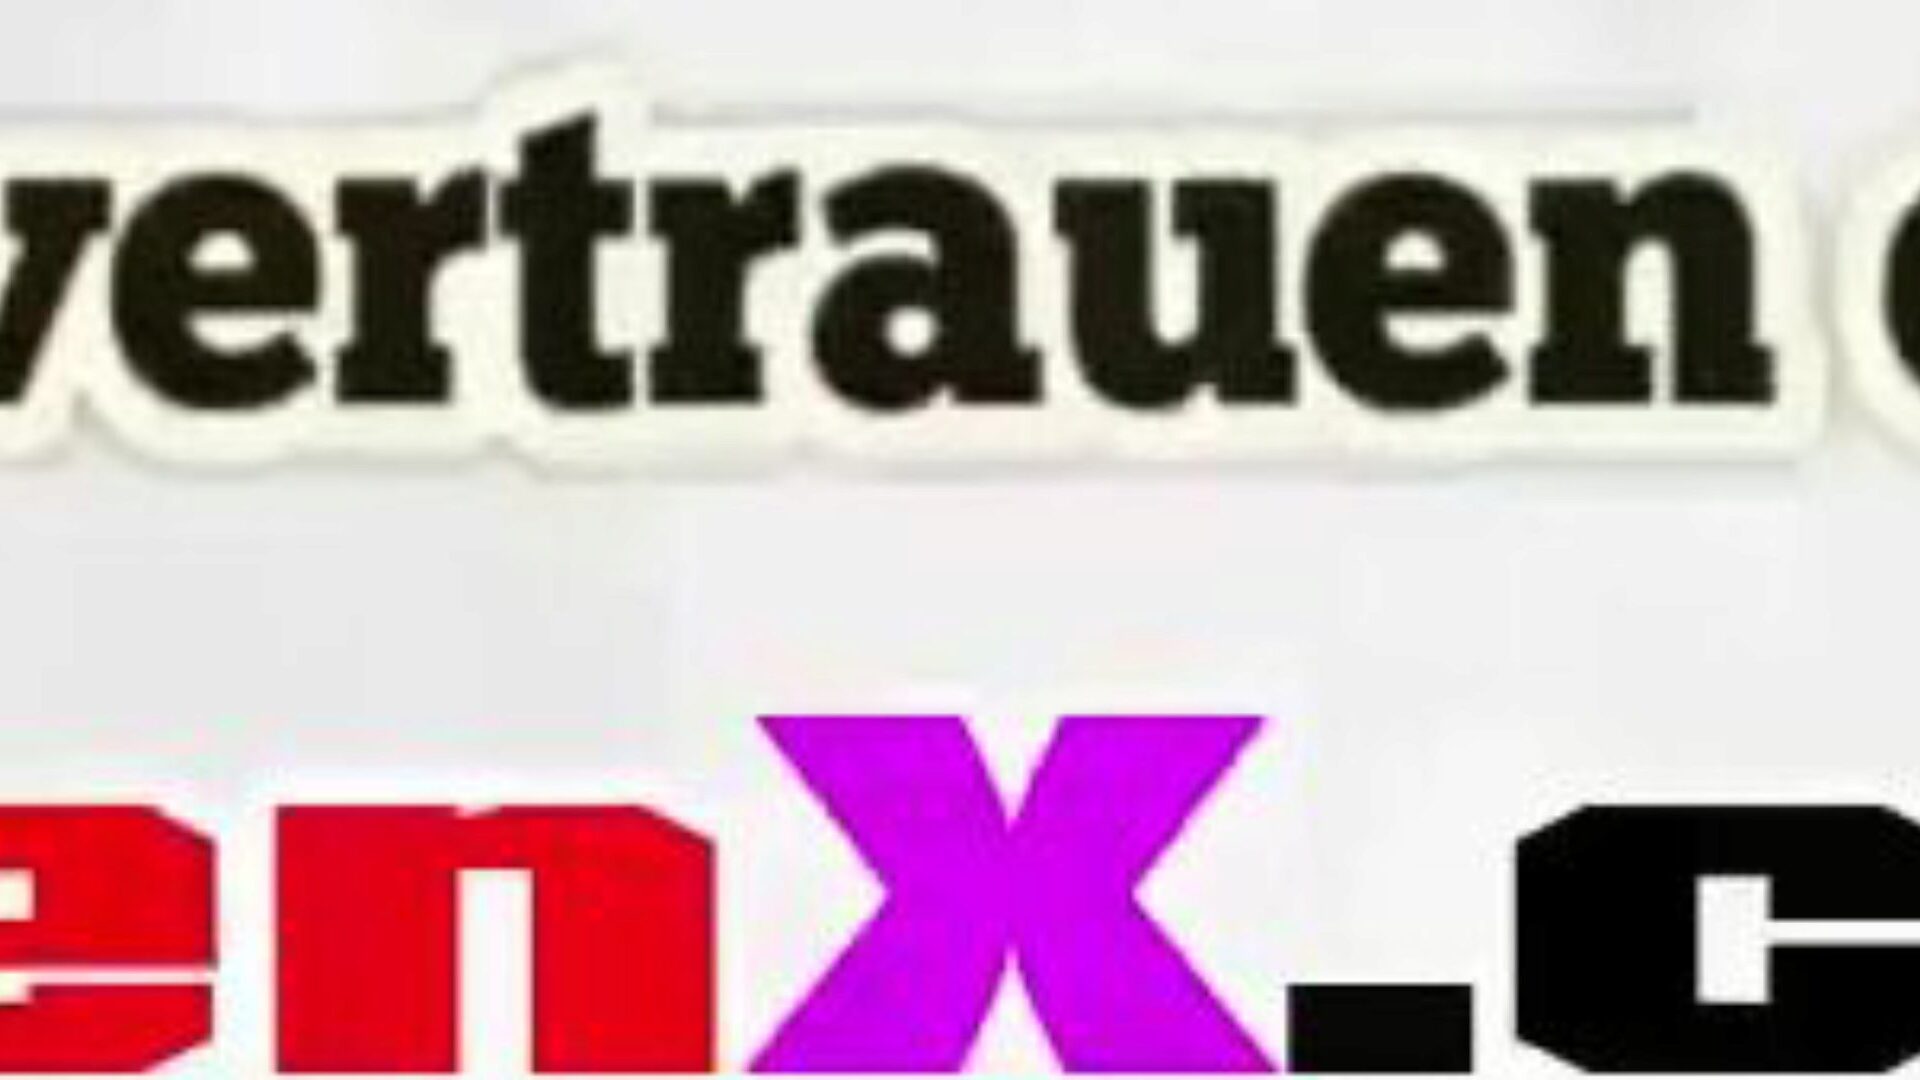 stiefmutter gefickt: gratuit mutter german hd porno video f5 ceas stiefmutter gefickt tube fuckfest video gratuit pentru toți pe xhamster, cu colecția uimitoare de germani mutter germani și mutter tochter hd pornografie filme episoade